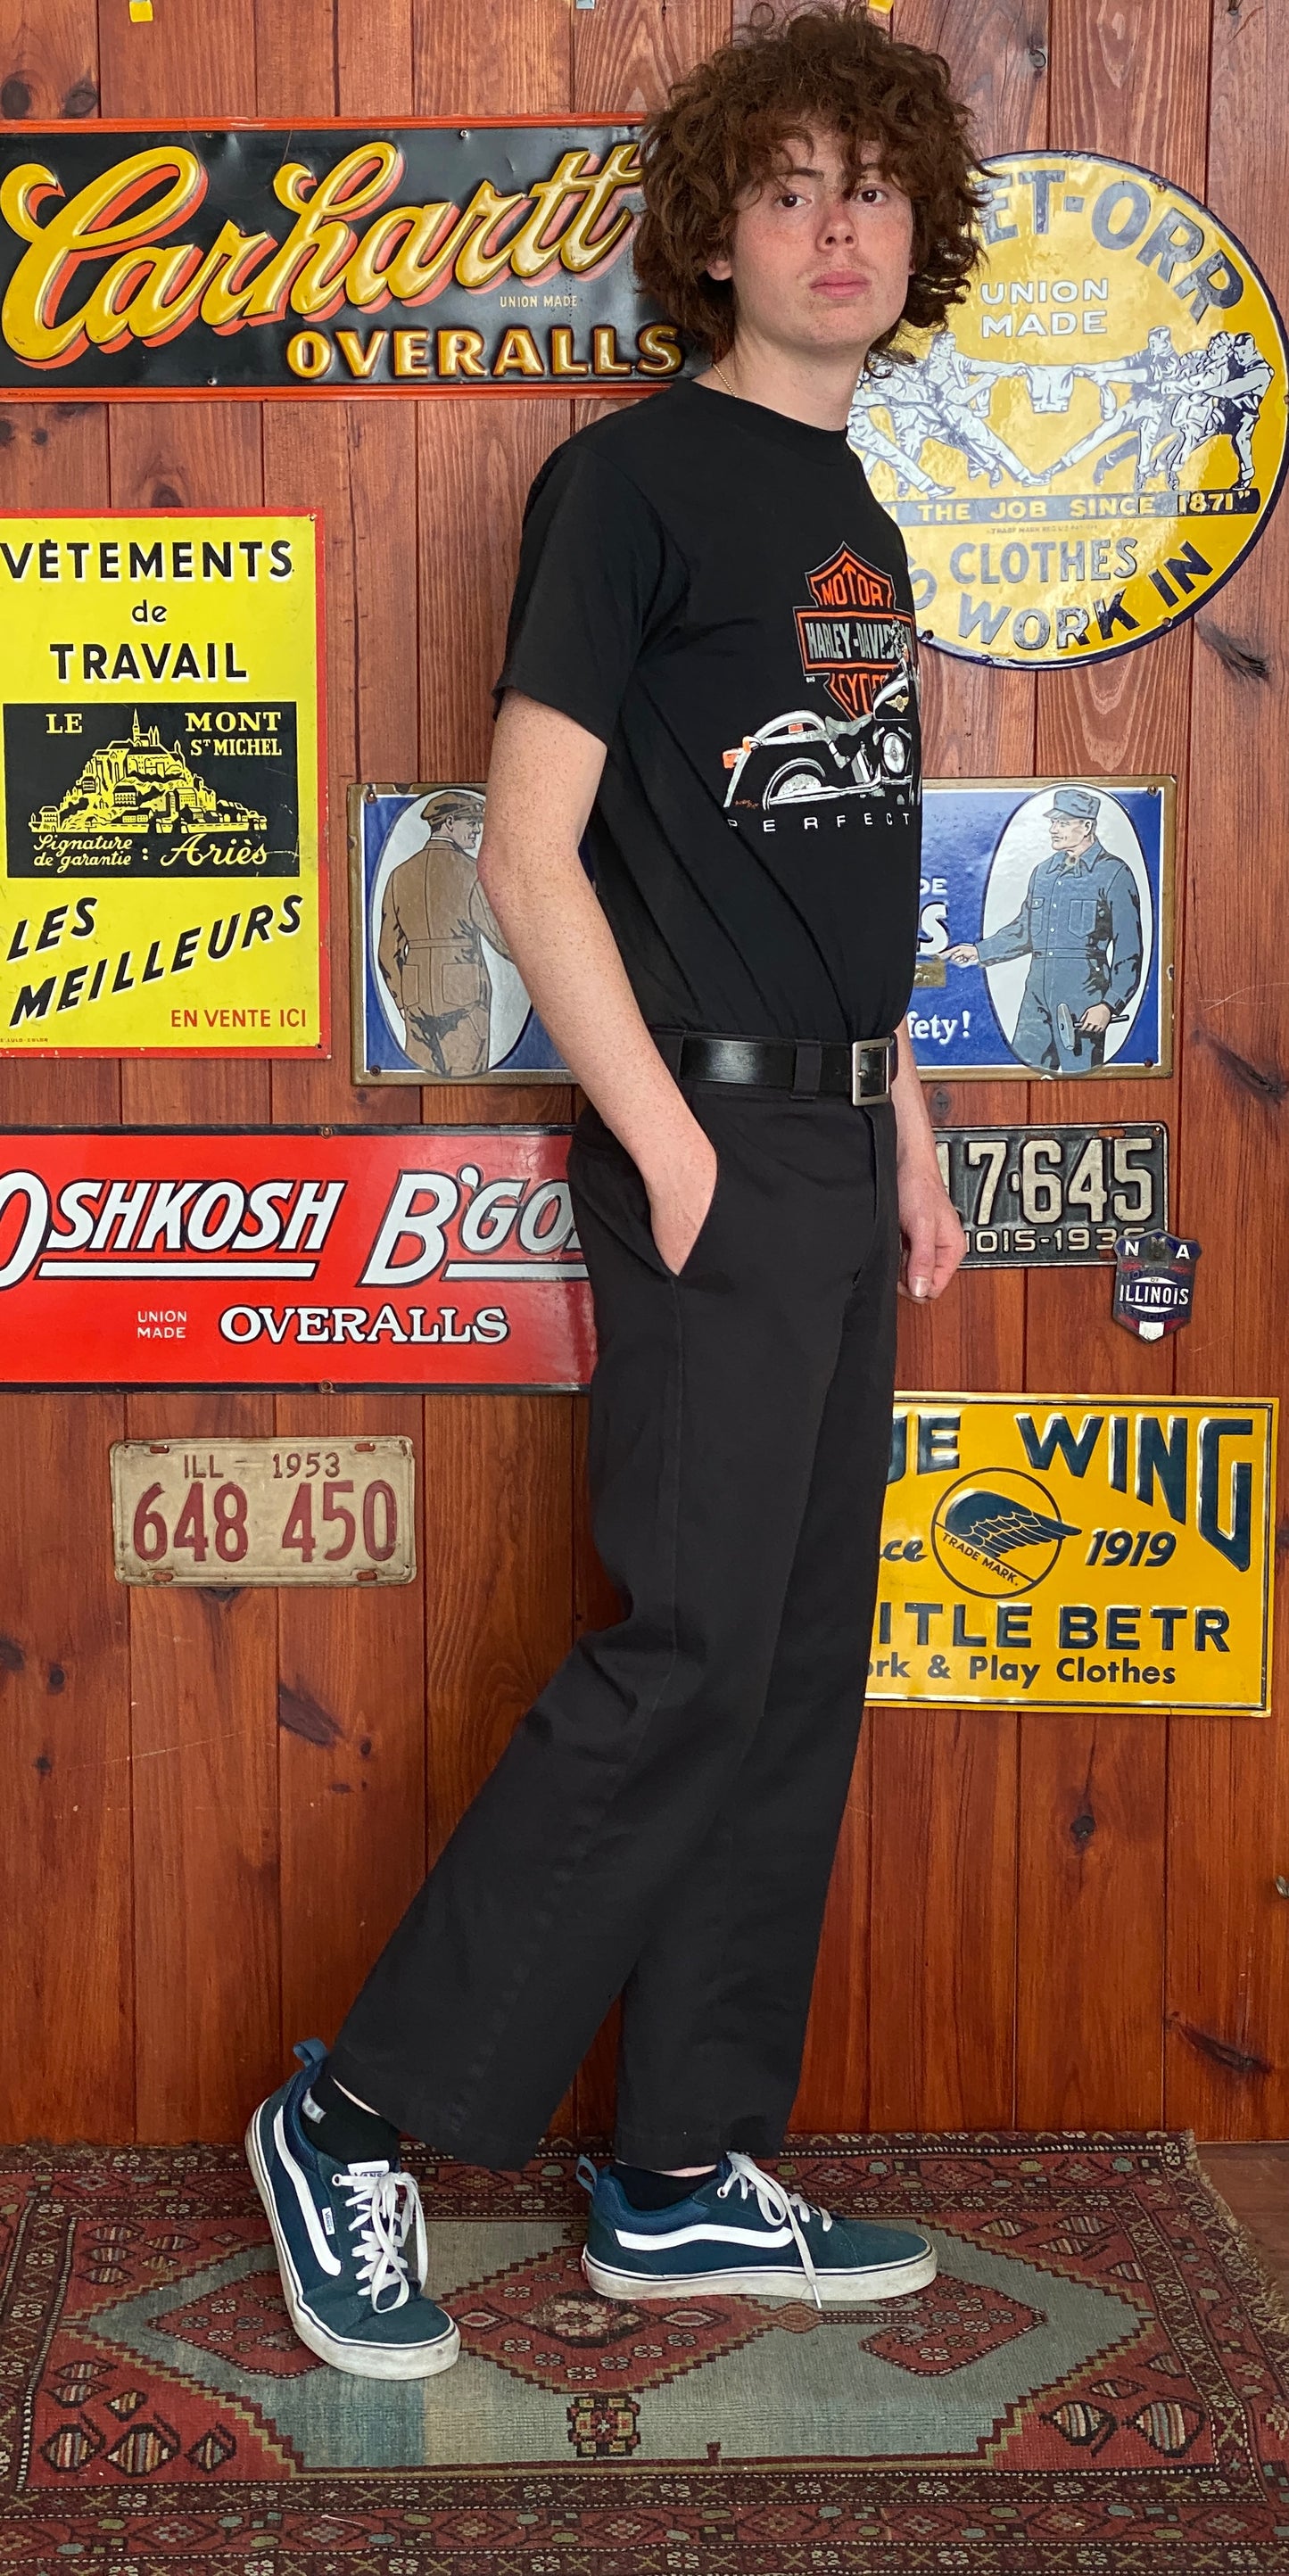 Black Vintage Dickies pants model 874 size 32X30